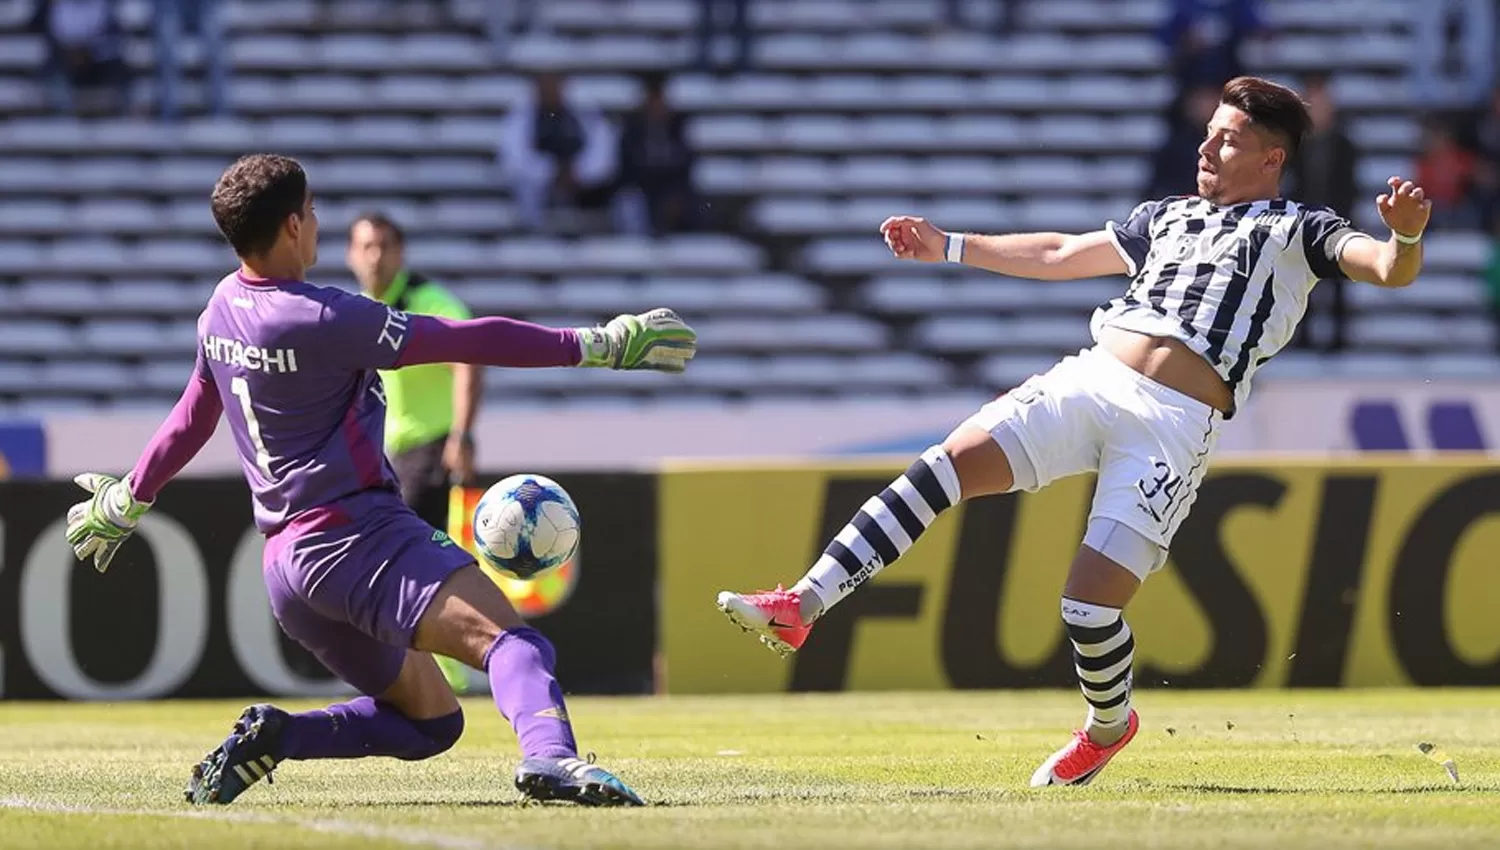 EL TUCU. Alan Aguerre le ahogó el gol a Sebastián Palacios. FOTO TOMADA DE TWITTER.COM/CATALLERESCBA